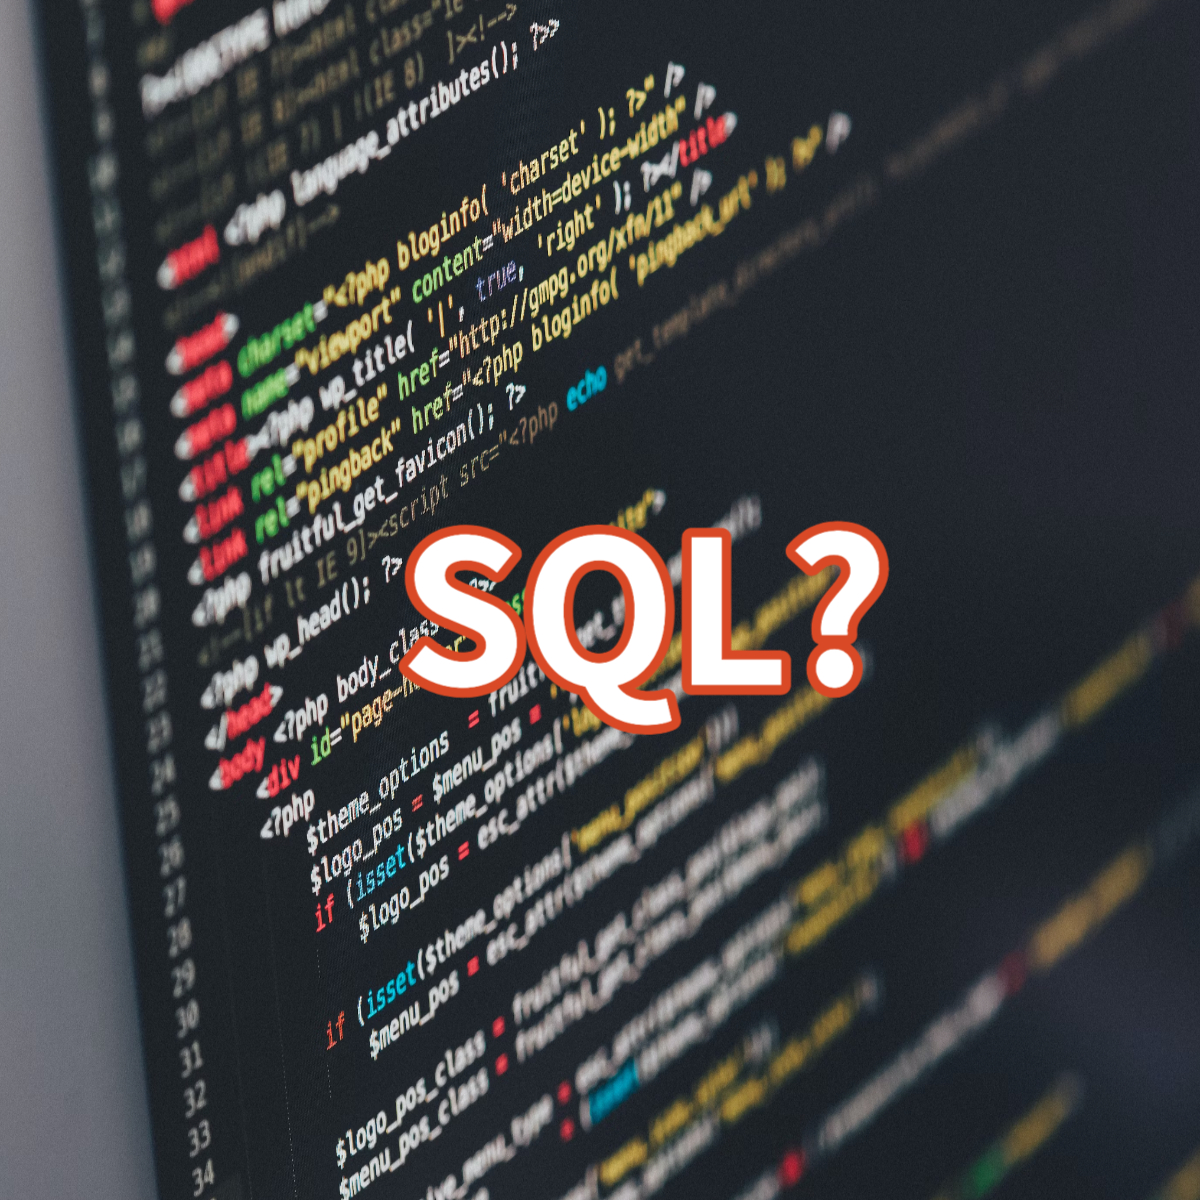 SQL의 상세한 소개와 SQL 사용의 중요성 등을 알려드리는 시간을 갖도록 하겠습니다.